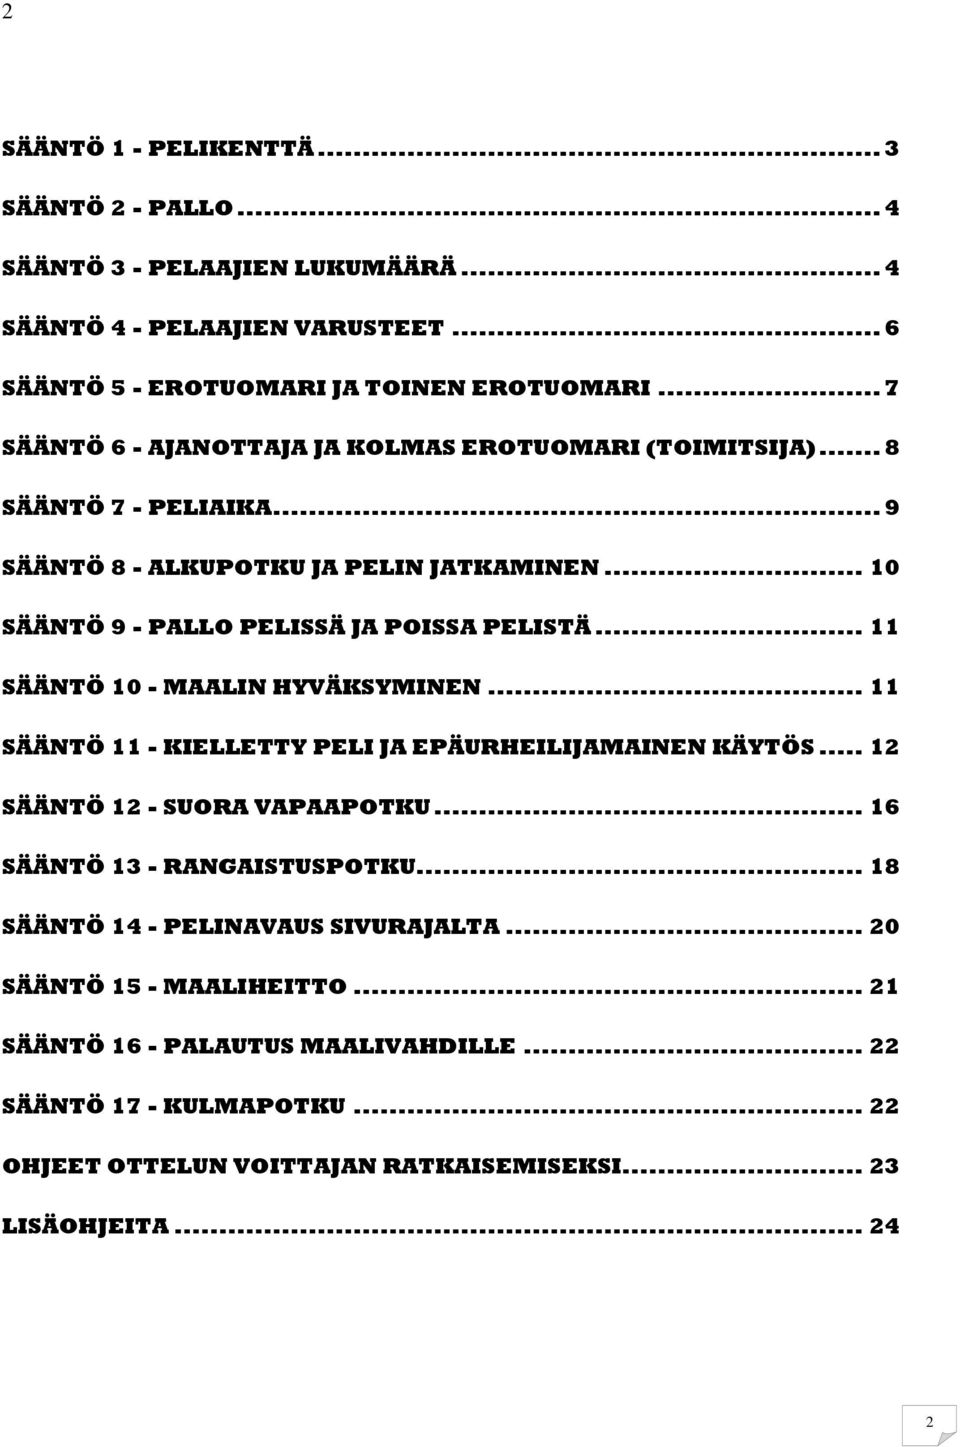 .. 11 SÄÄNTÖ 10 - MAALIN HYVÄKSYMINEN... 11 SÄÄNTÖ 11 - KIELLETTY PELI JA EPÄURHEILIJAMAINEN KÄYTÖS... 12 SÄÄNTÖ 12 - SUORA VAPAAPOTKU... 16 SÄÄNTÖ 13 - RANGAISTUSPOTKU.